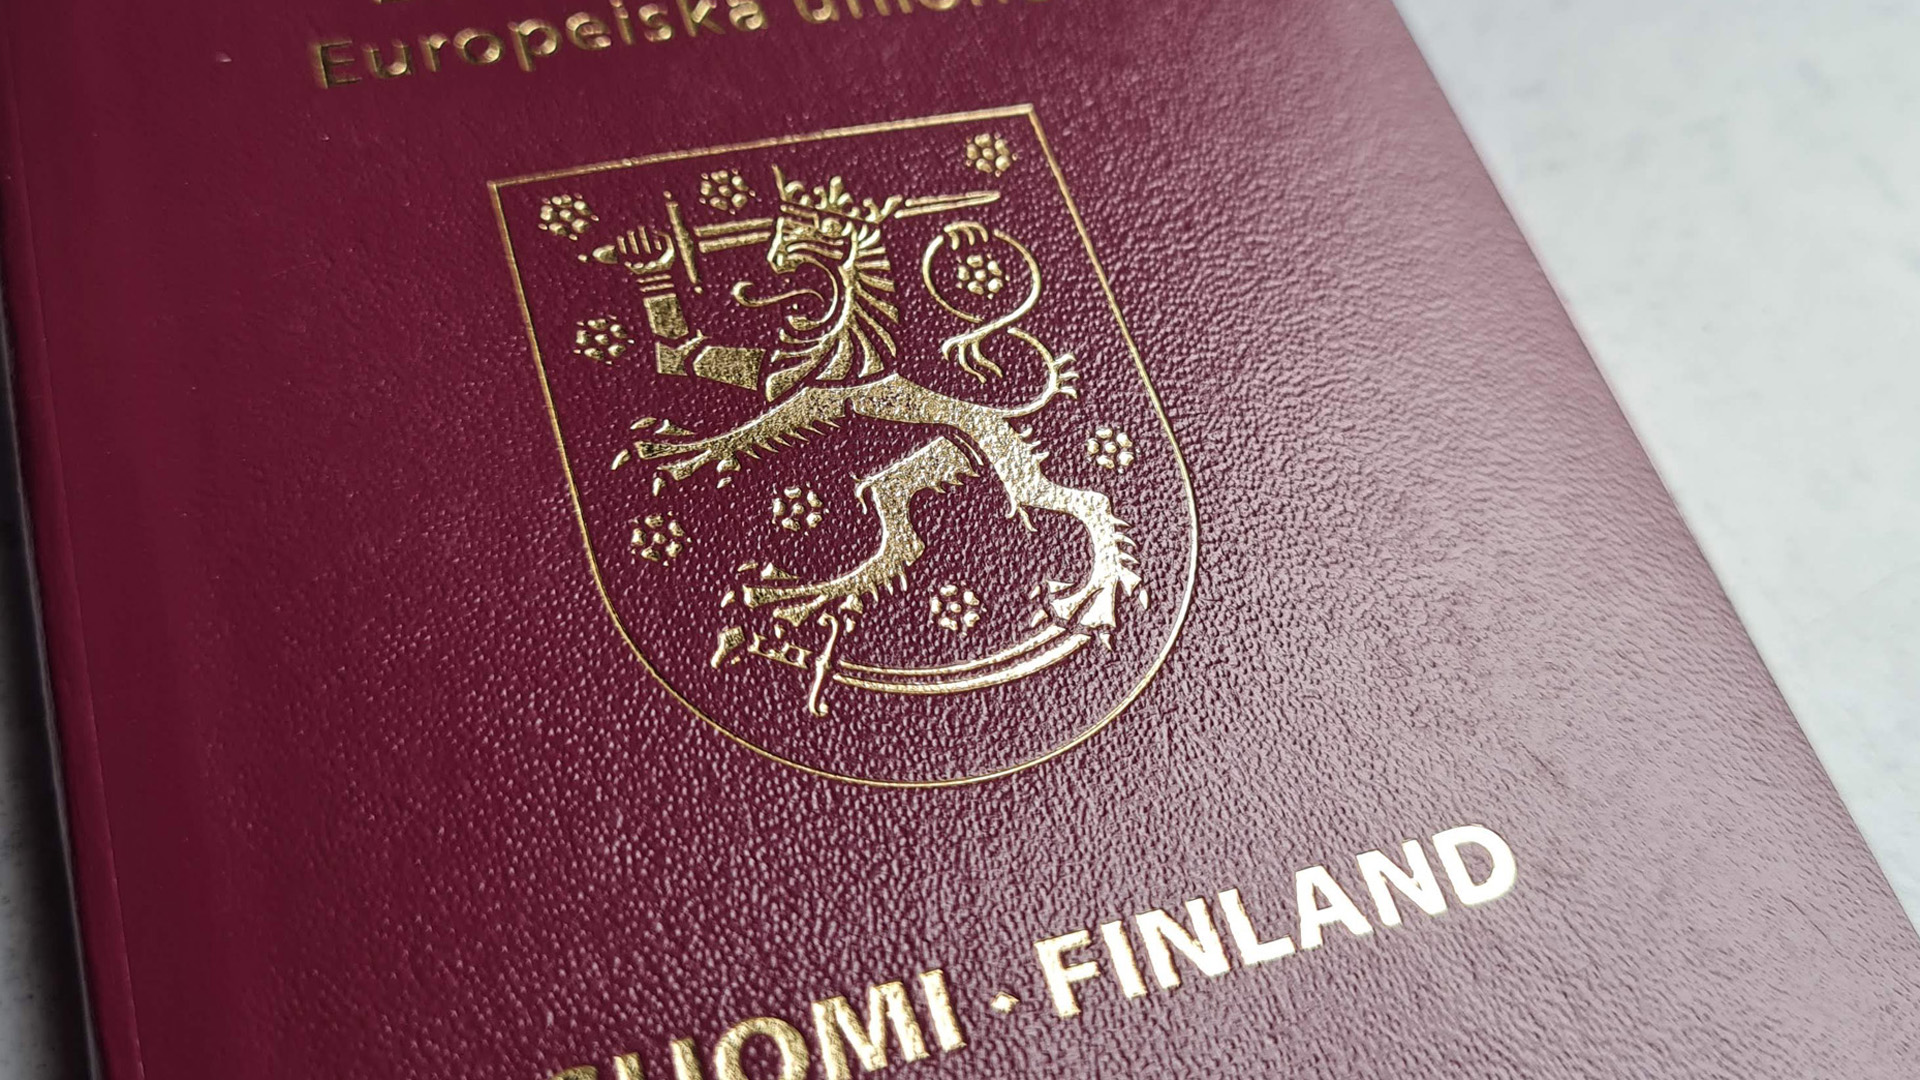 Suomen passin kansi / Finnischer Reisepass